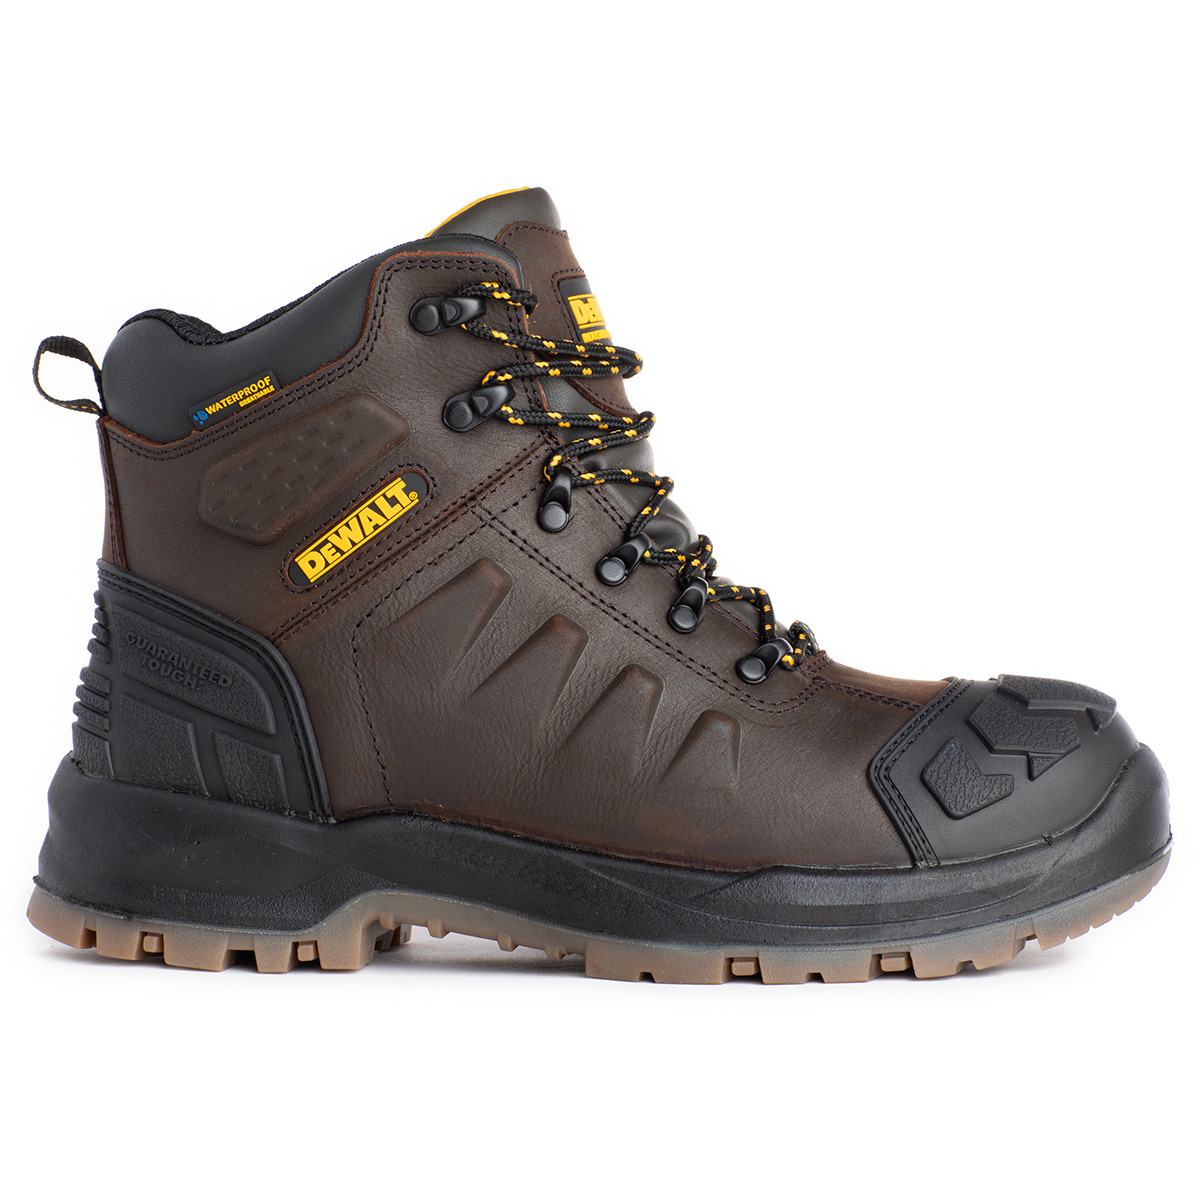 Dewalt Men's Hadley Safety Toe Work Boots Brown 10 | eBay